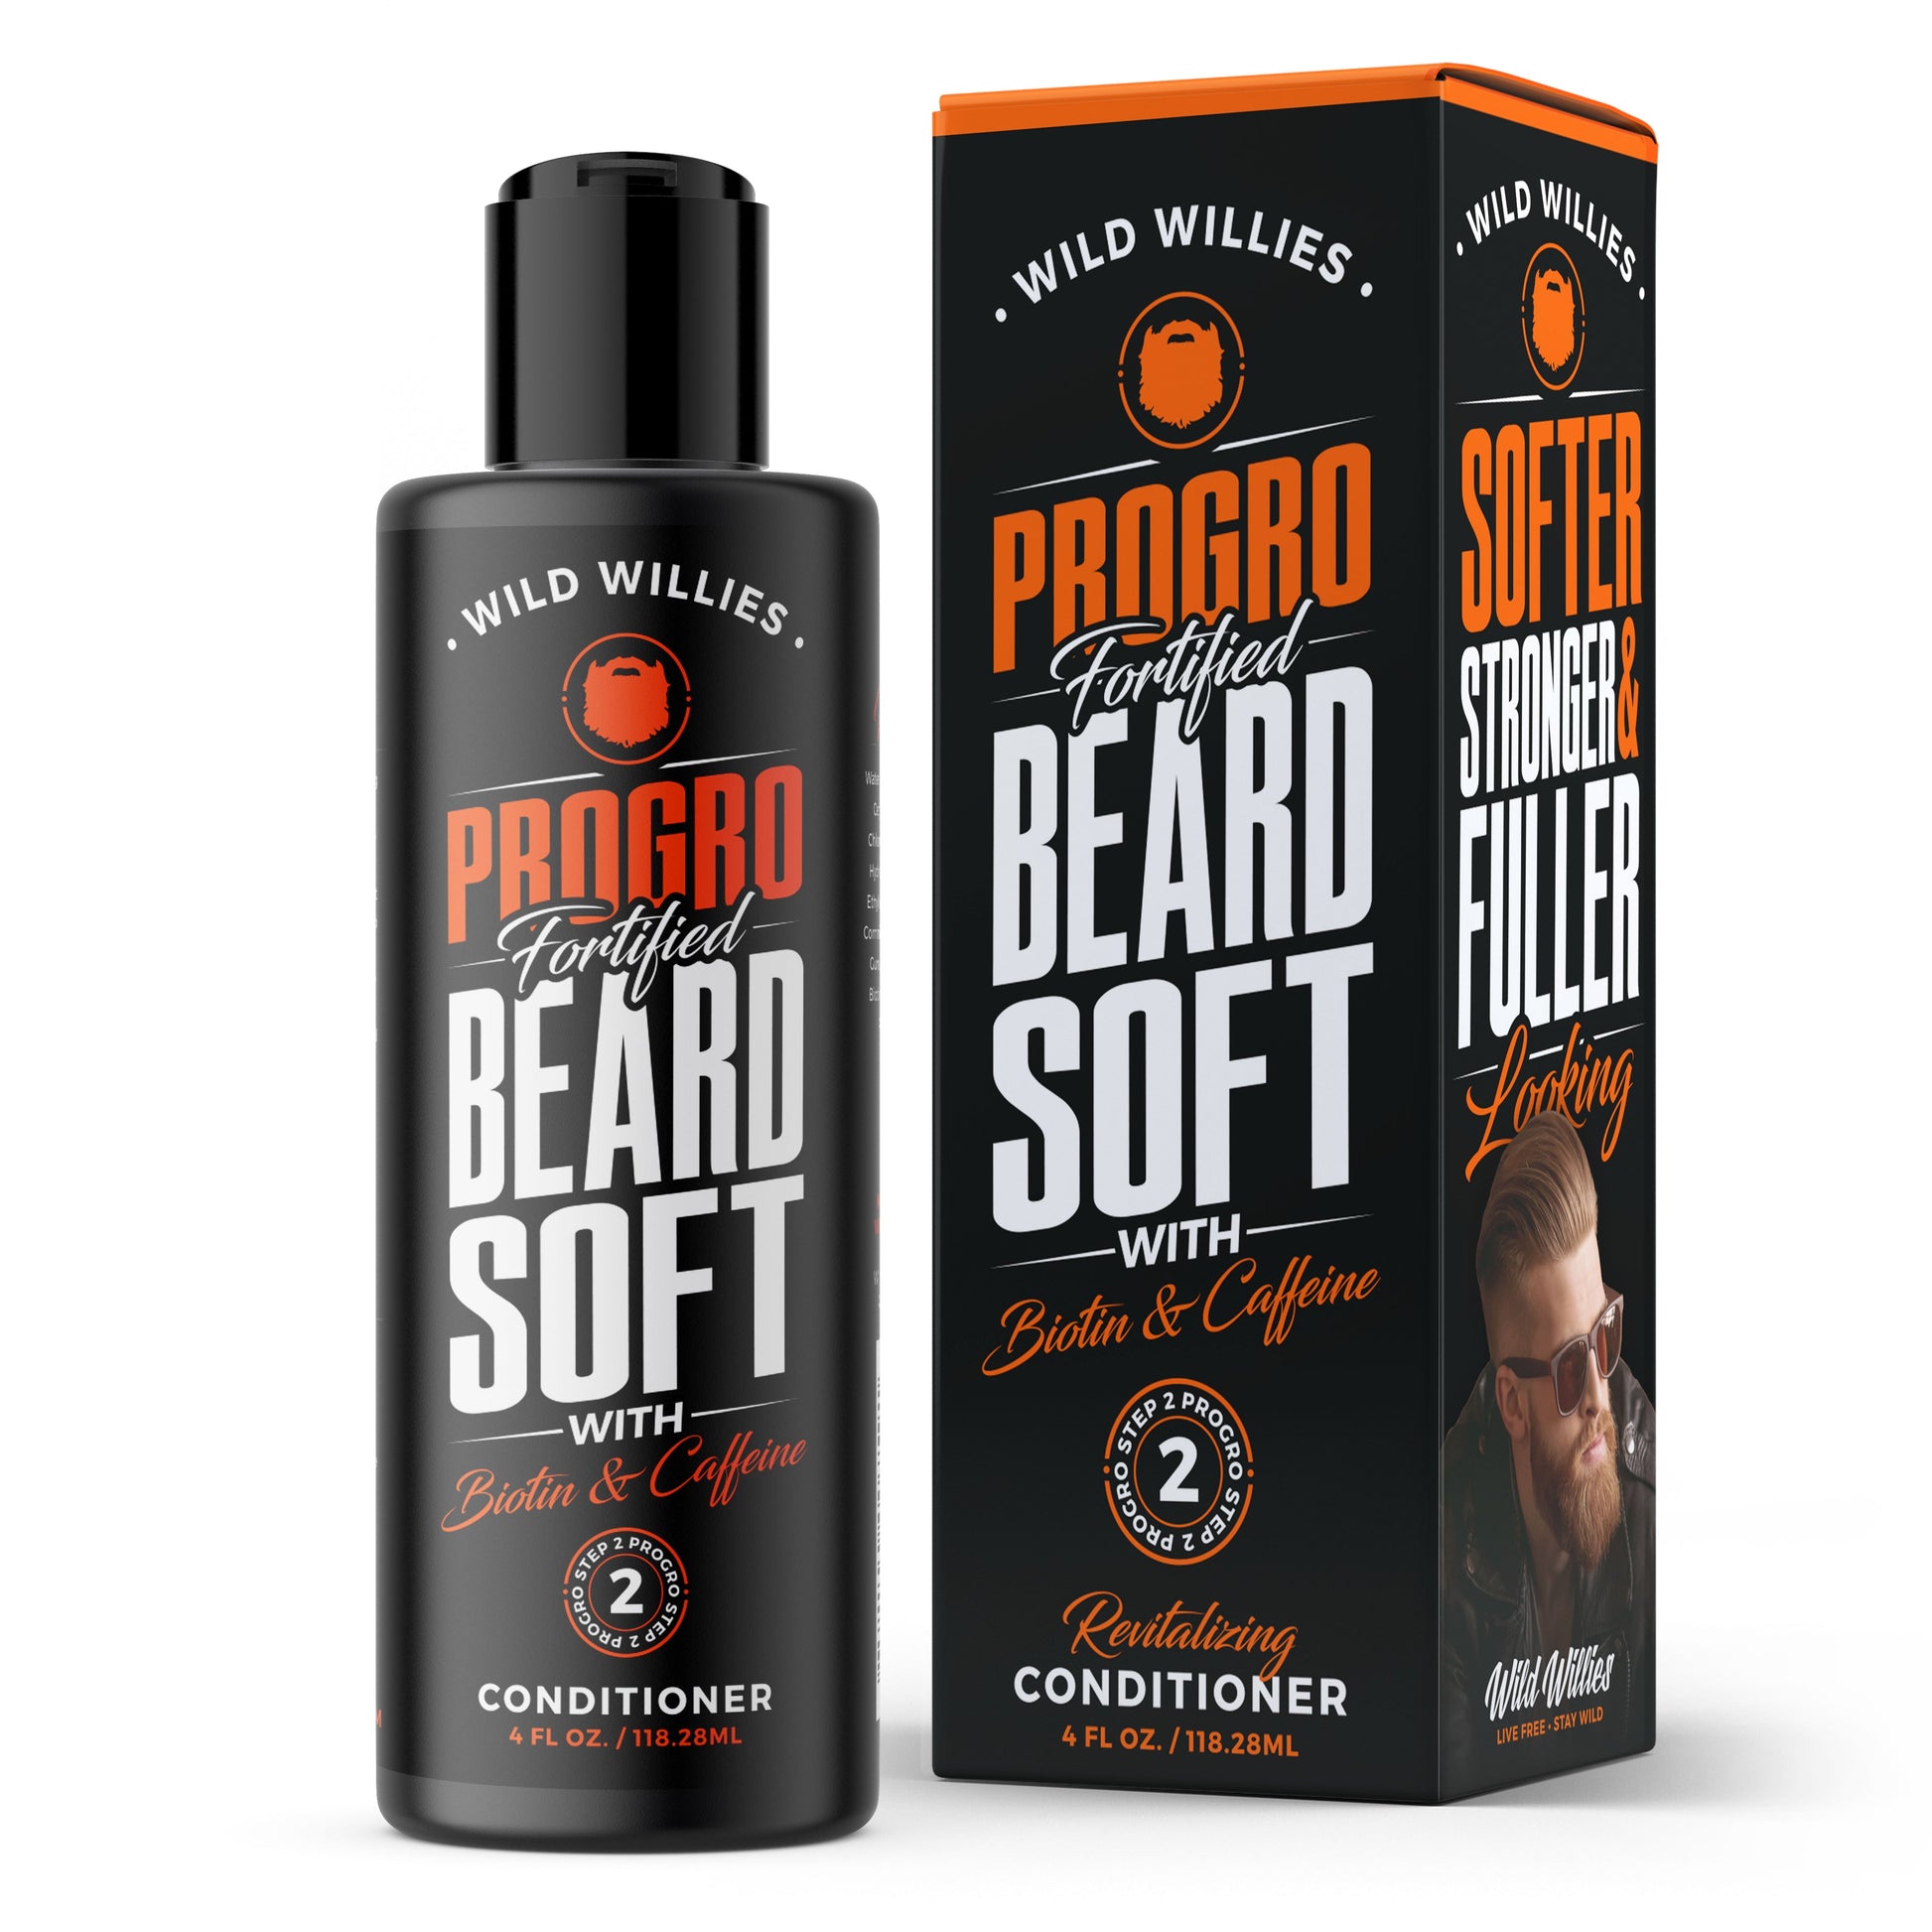 PROGRO Beard Soft Beard Wash Wild-Willies 